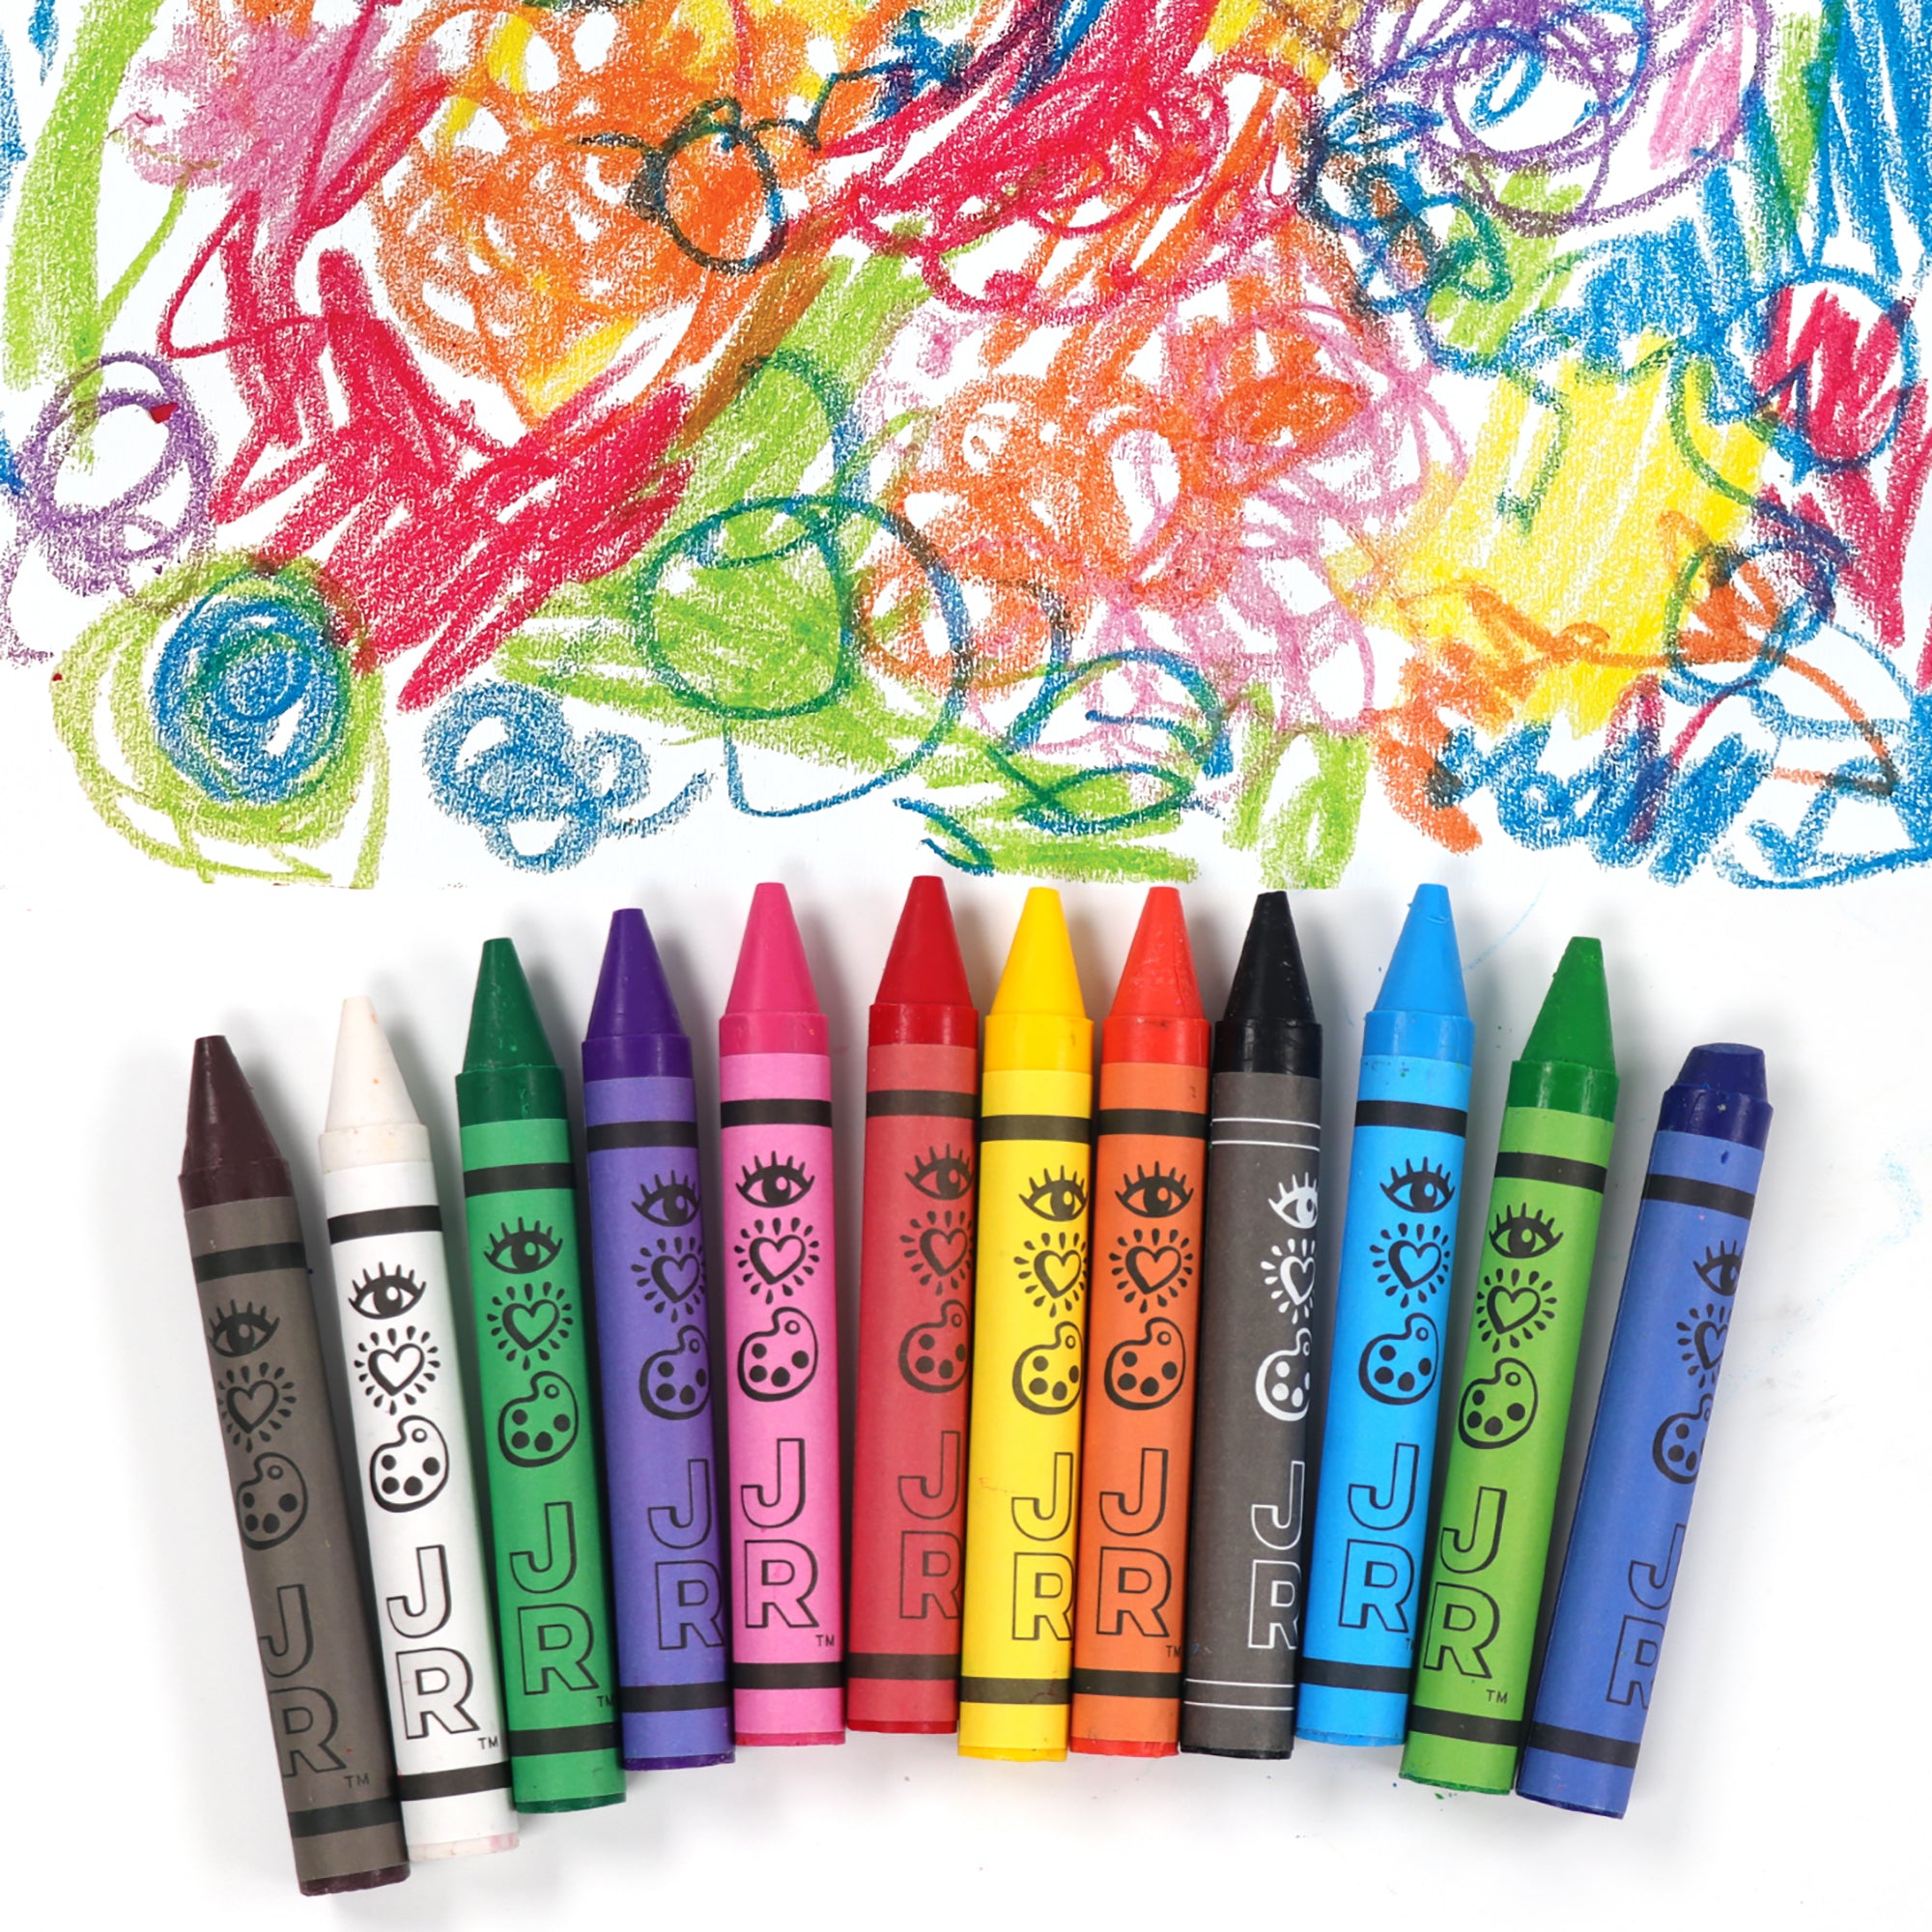 Eurekakids - 12 Crayons de Couleur Bébé Jumbo